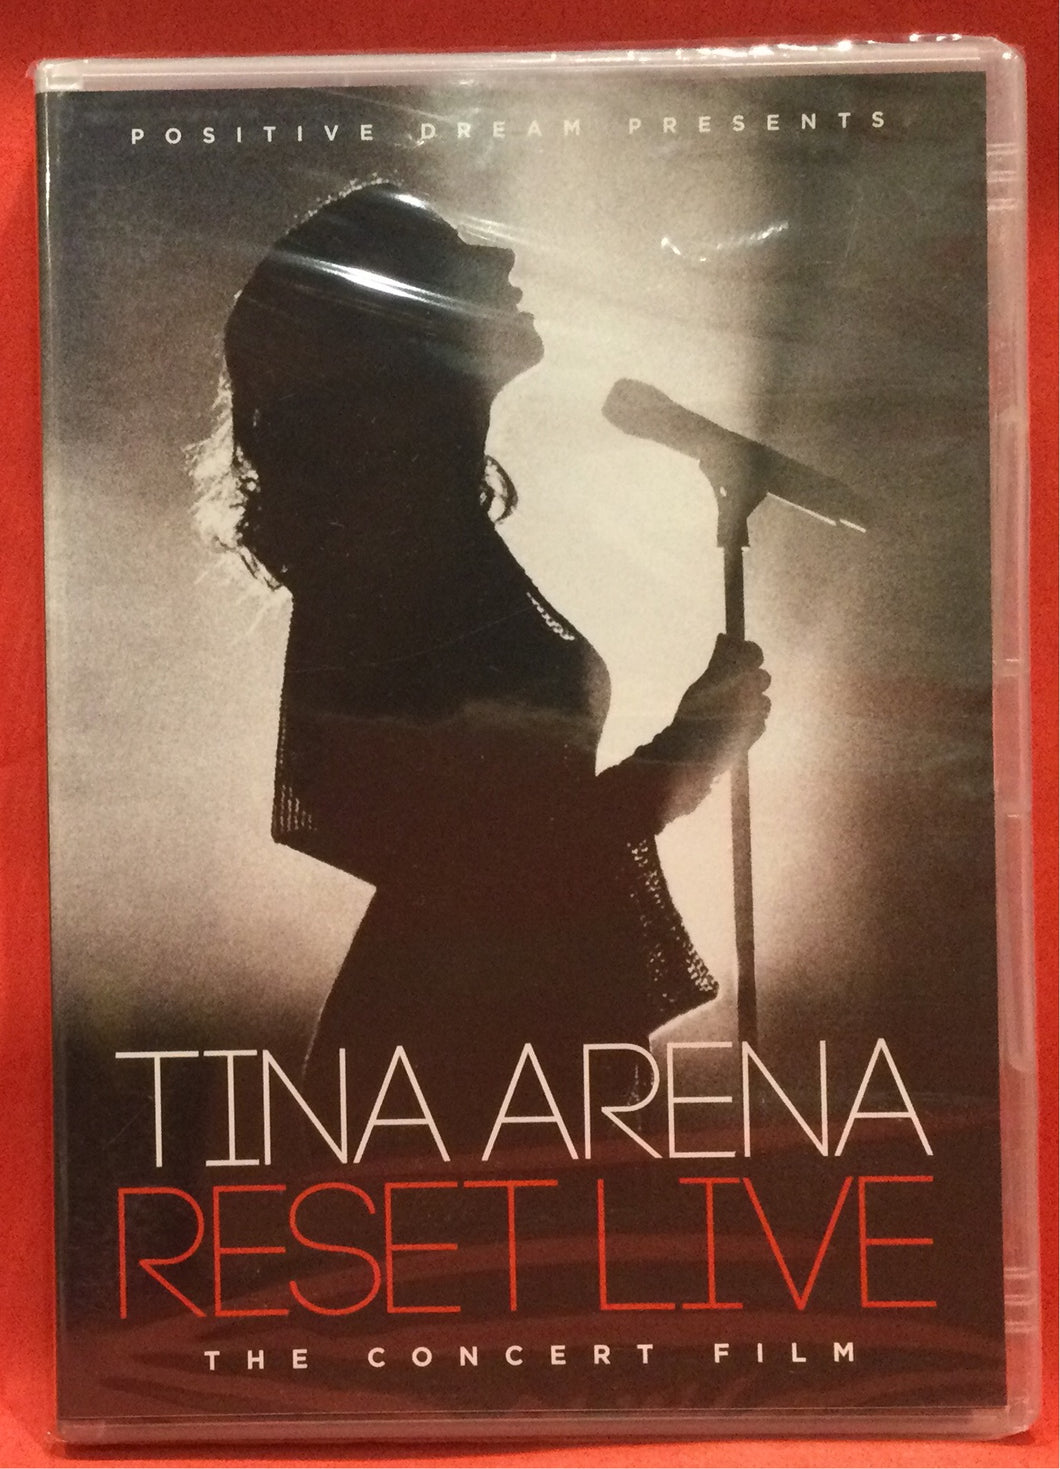 TINA ARENA RESET LIVE CONCERT FILM DVD